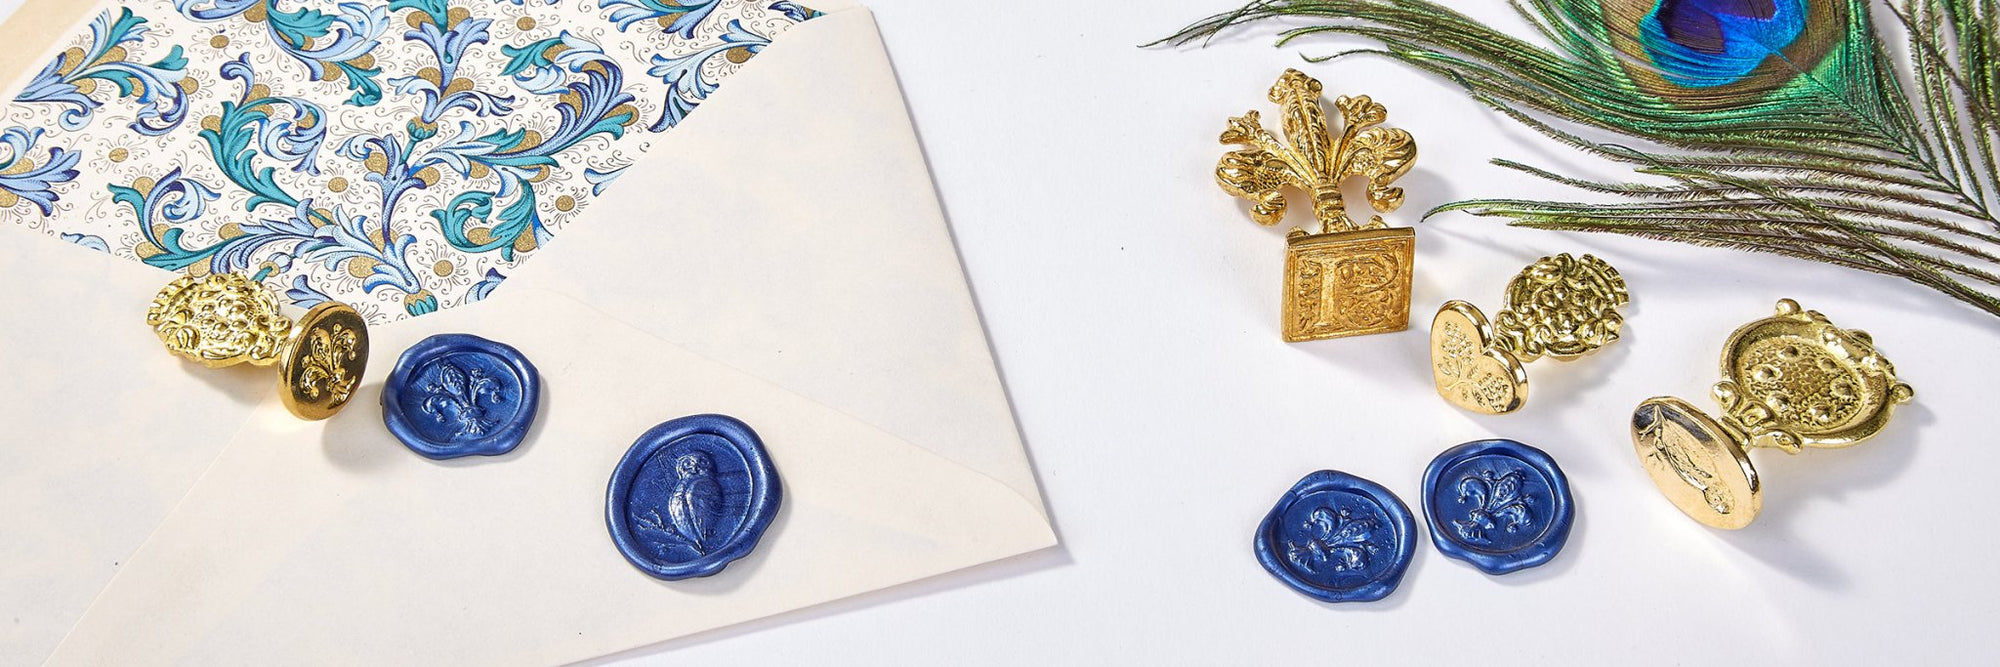 Florentine Brass Stamp Stock Symbols - Nostalgic Impressions